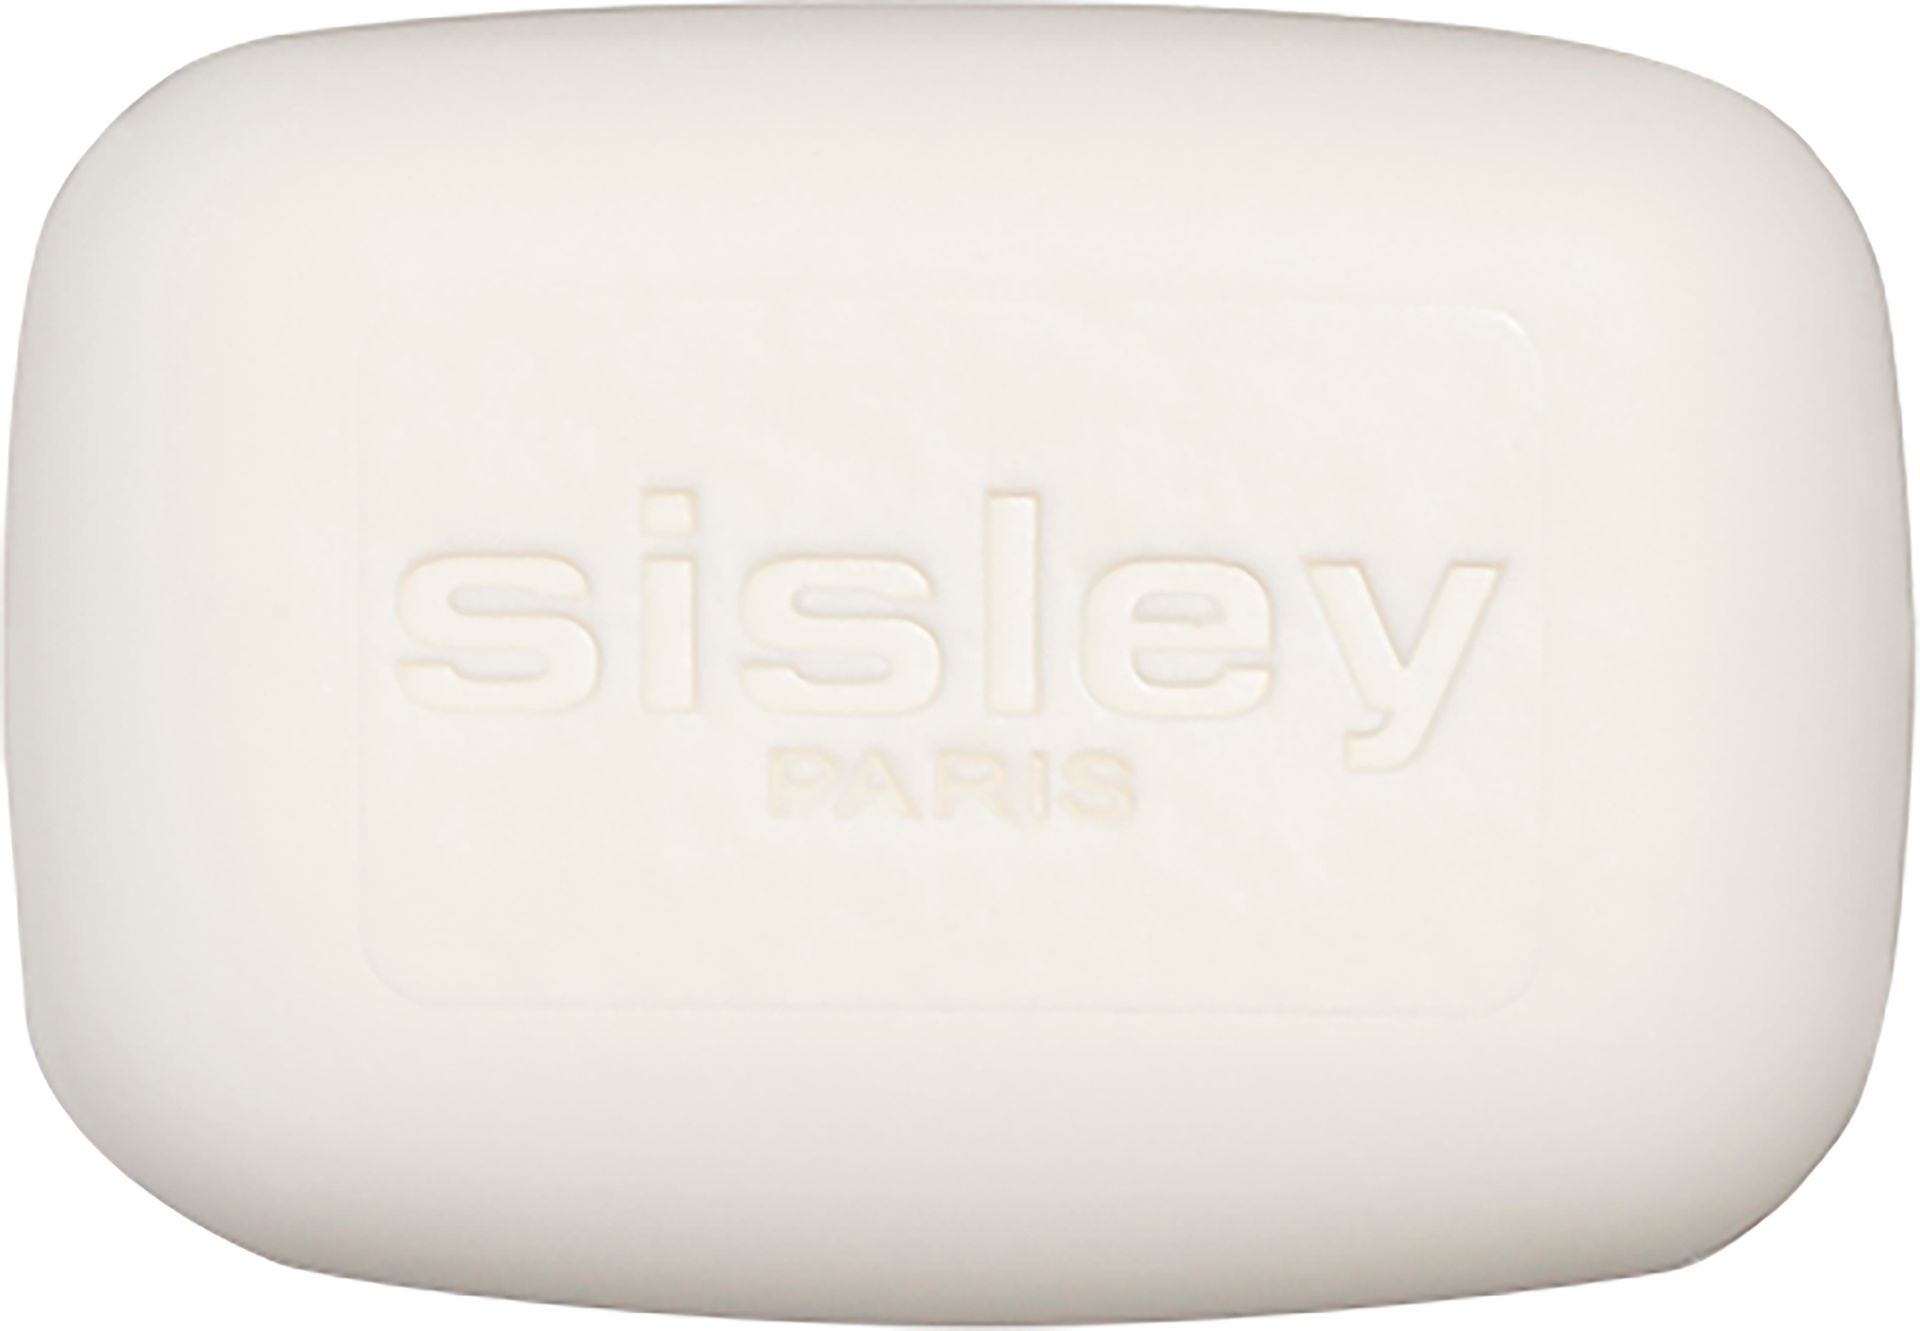 Sisley Soapless Facial Cleaning Bar mydło do twarzy cera mieszana/tłusta 125g